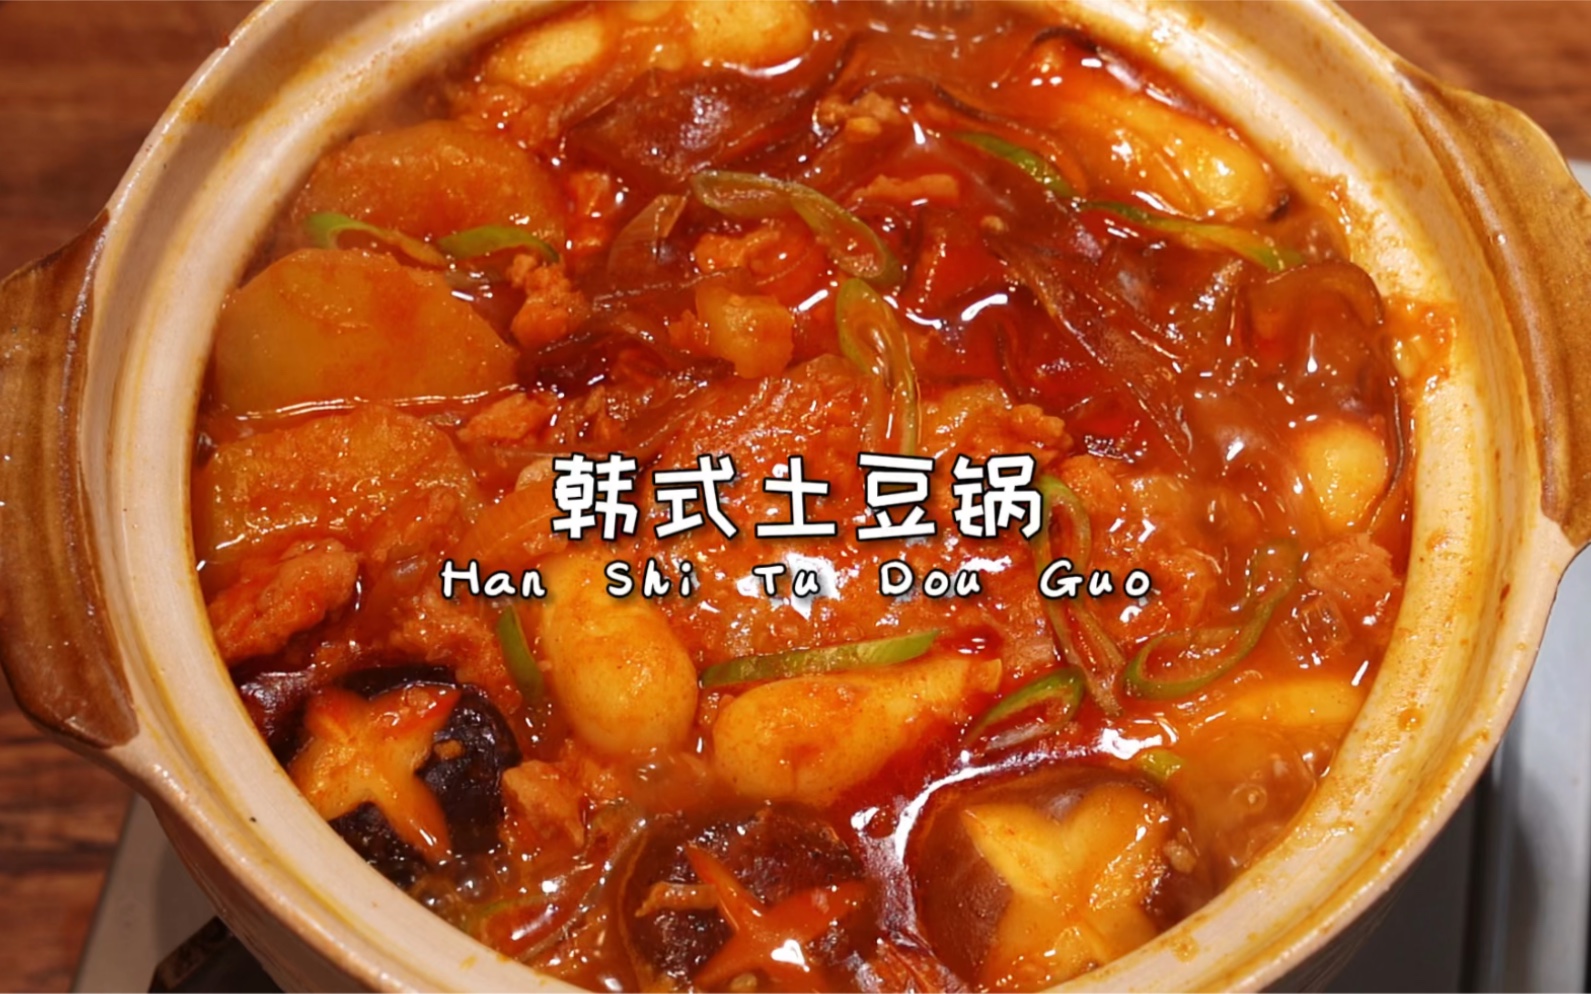 假期在家一定要尝试的菜谱系列-韩式脊骨土豆汤_人体_白菜_辣酱